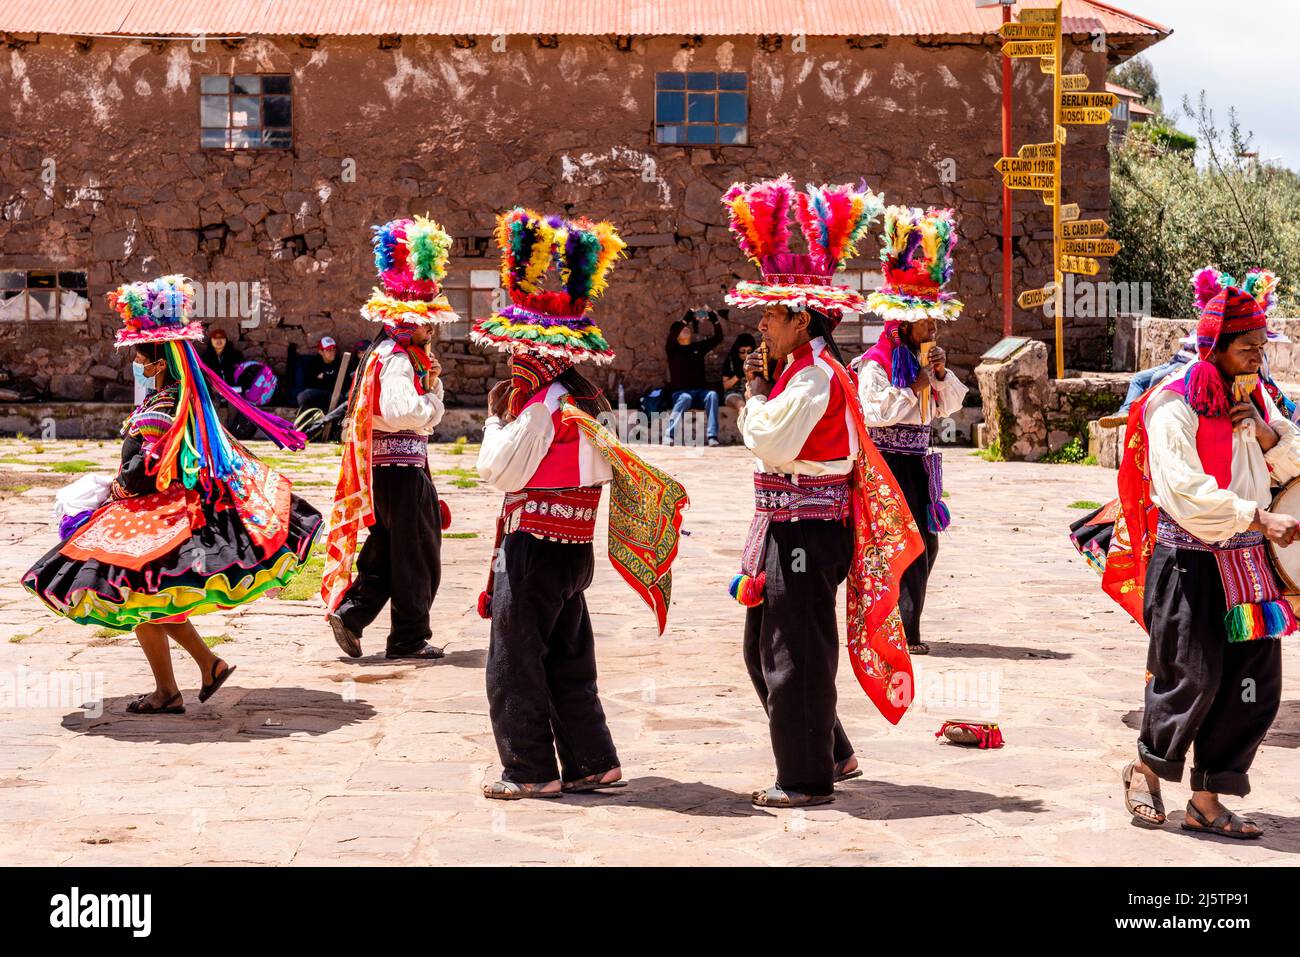 Taquileno Menschen In Traditionellen Kostümen Tanzen Auf Dem Marktplatz, Taquile Island, Titicacasee, Puno, Peru. Stockfoto